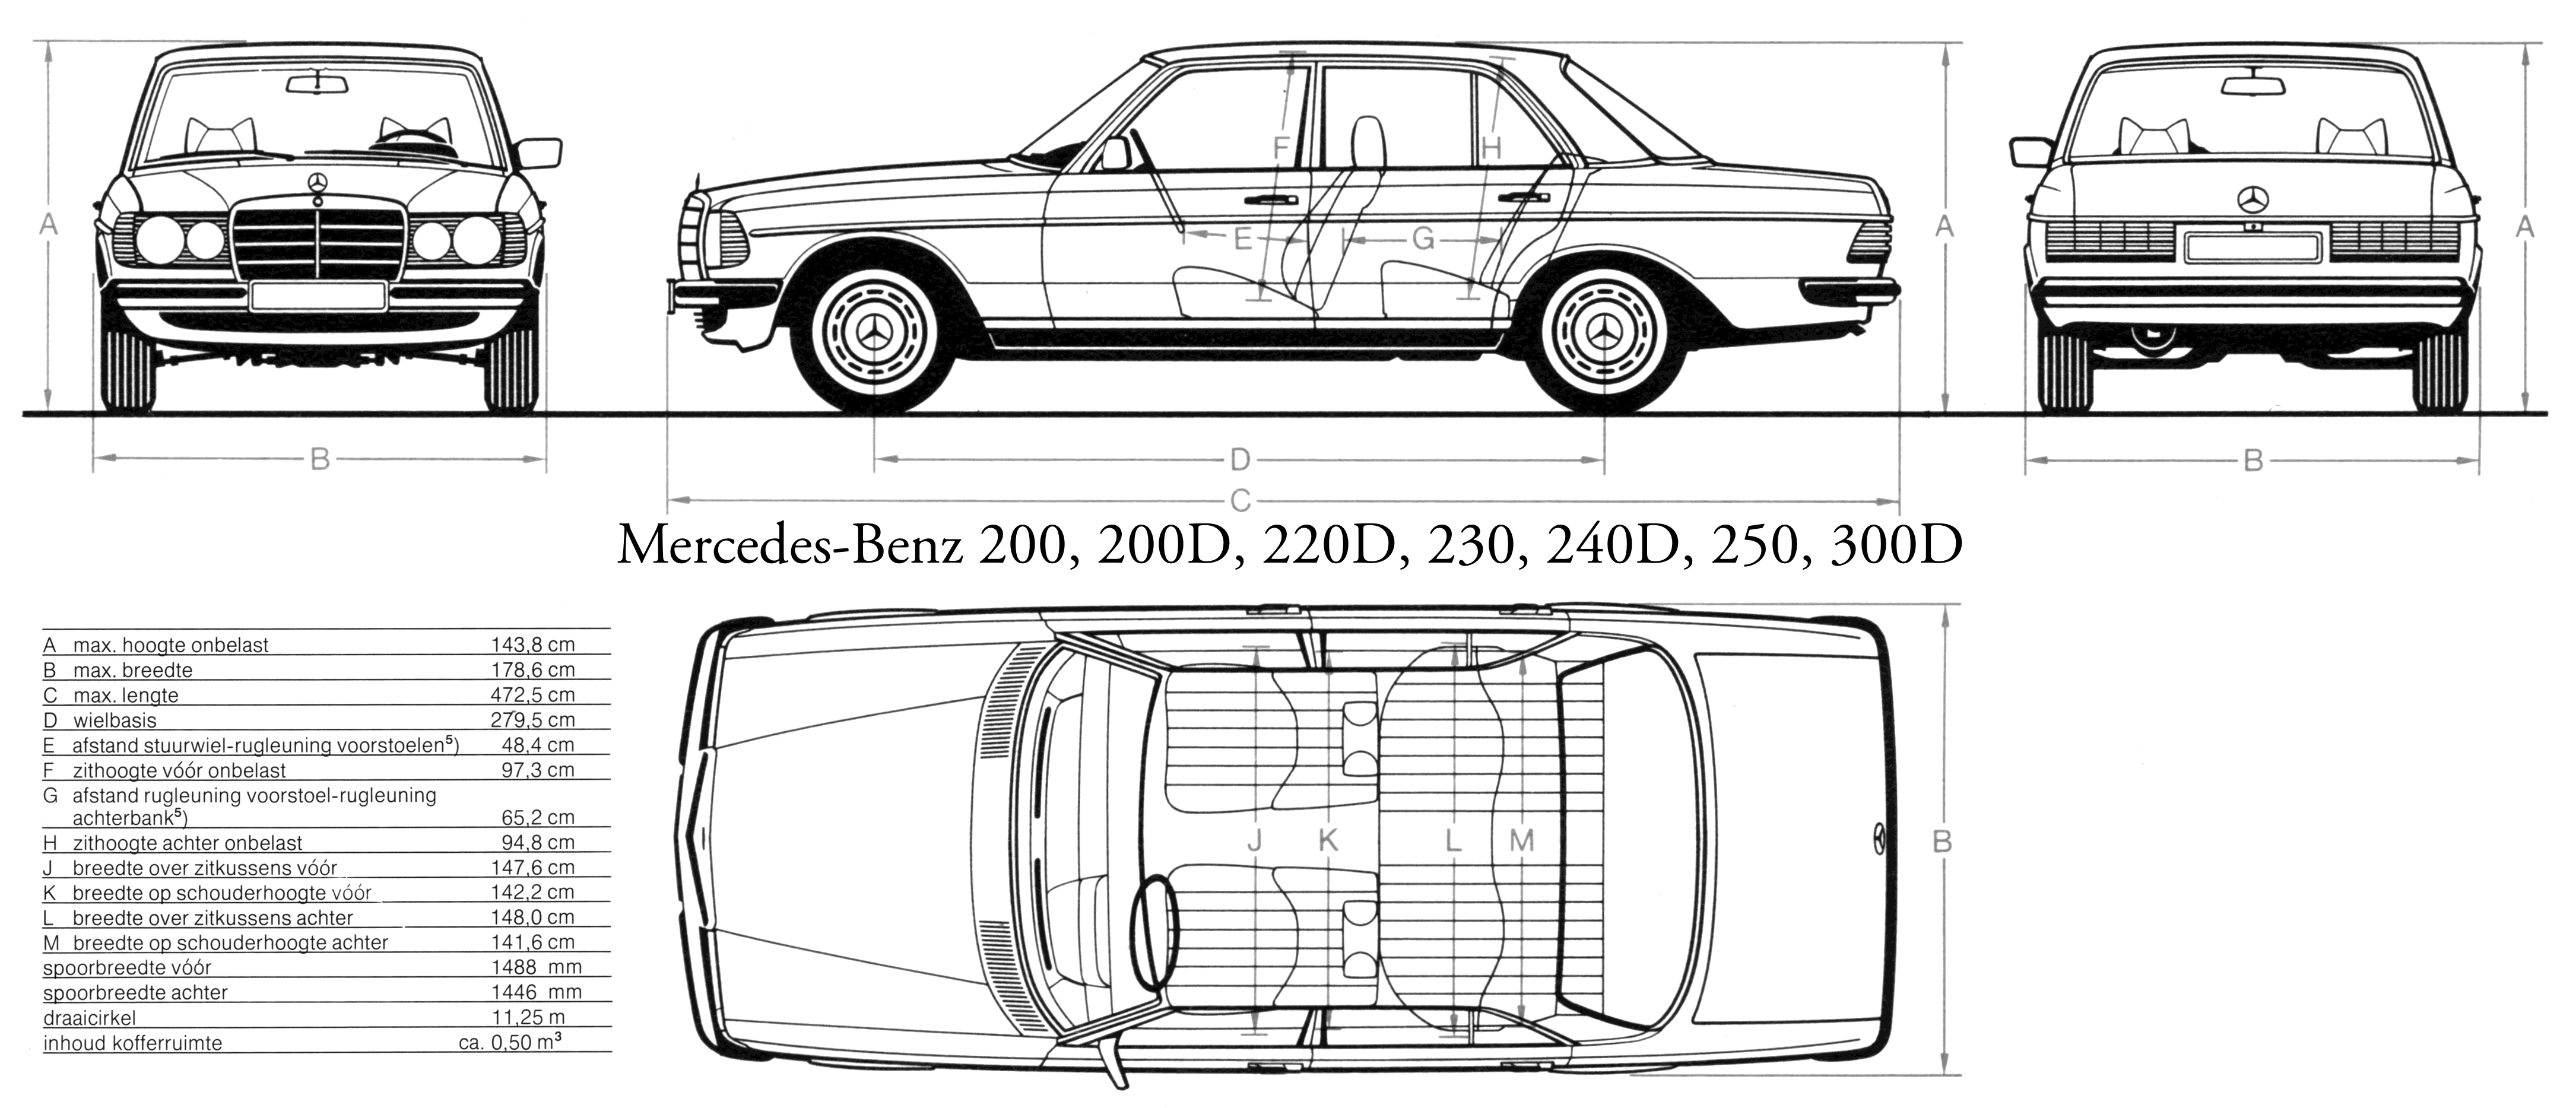 Mercedes-Benz W123 series blueprint